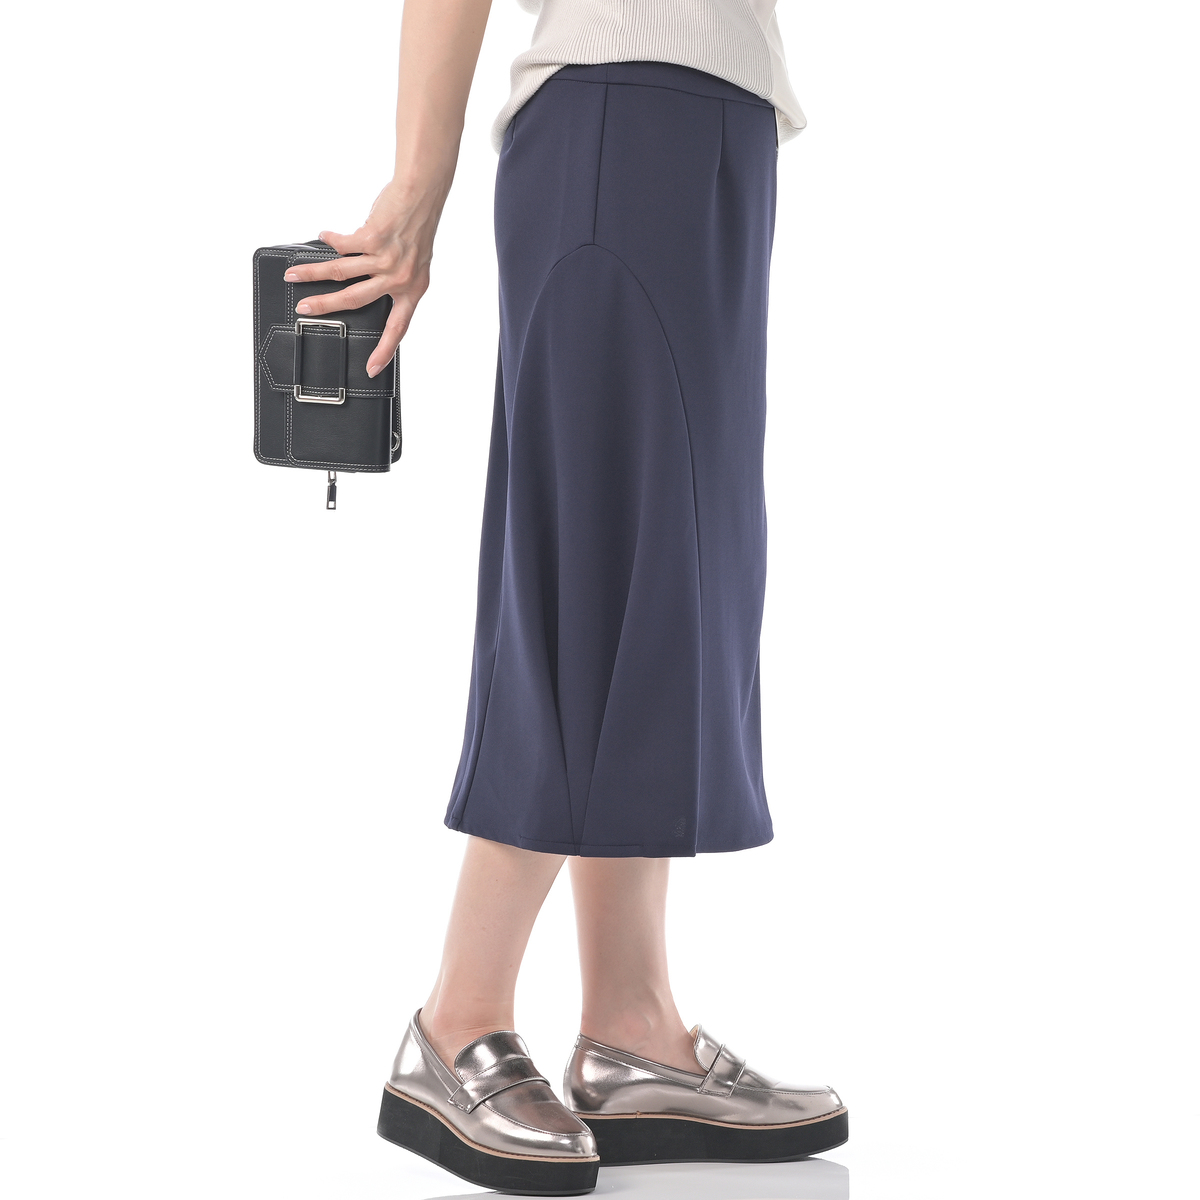 超ポイントバック祭】 kawai okada デザインパンツ スカート付き 動き 